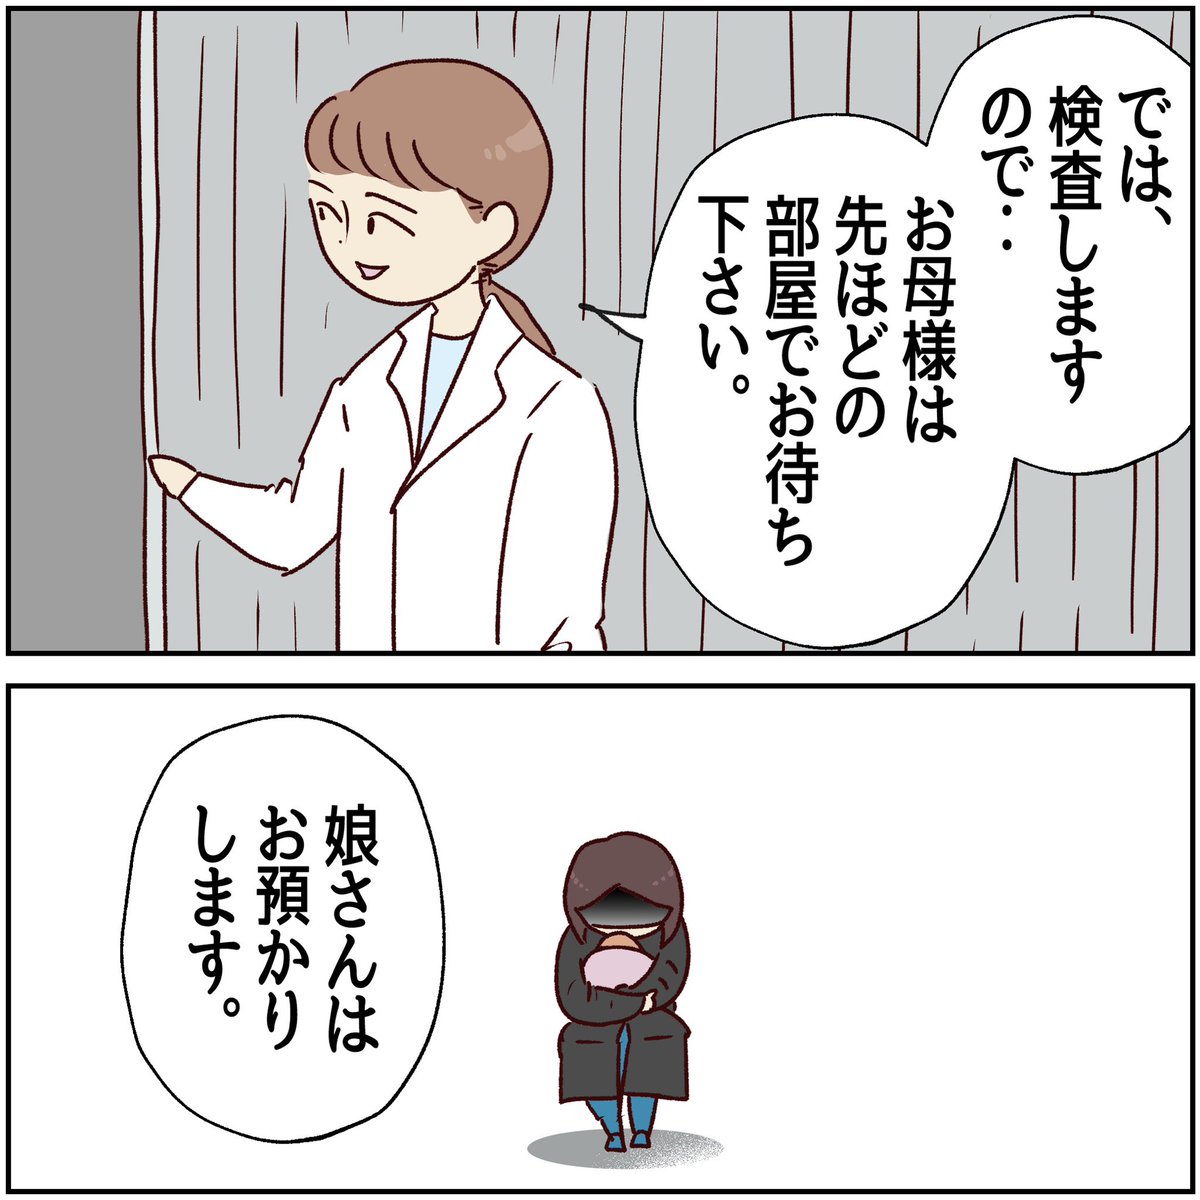 川崎病 手遅れになりかけた話【36】
(1/2)

娘さんはお預かりします。

#川崎病 #エッセイ漫画 